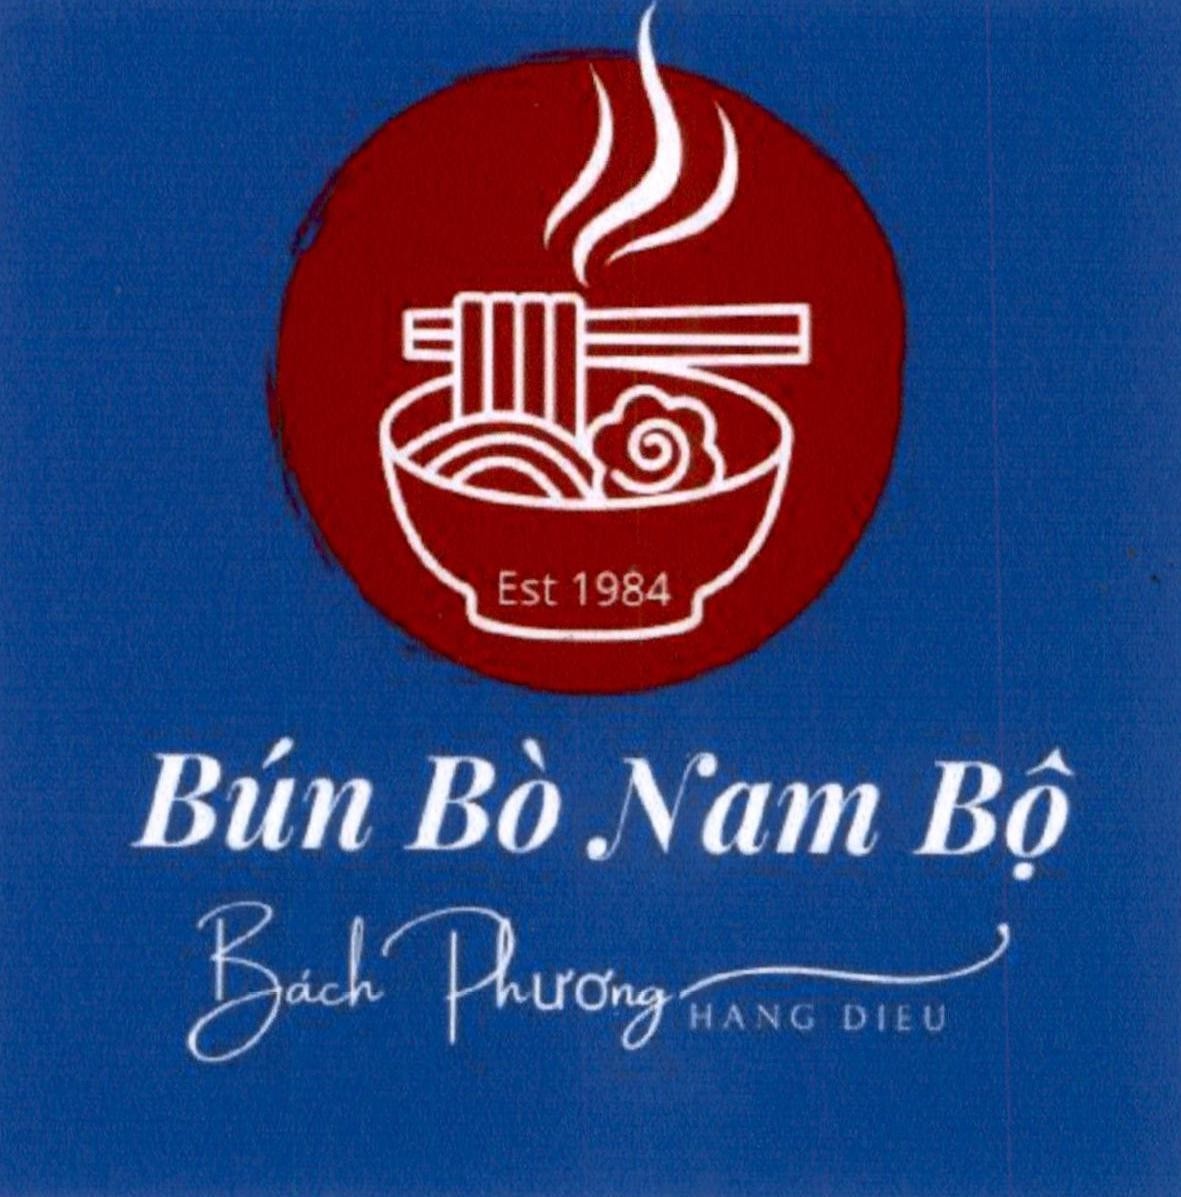 Bún Bò Nam Bộ Bách Phương Hang Dieu Est 1984